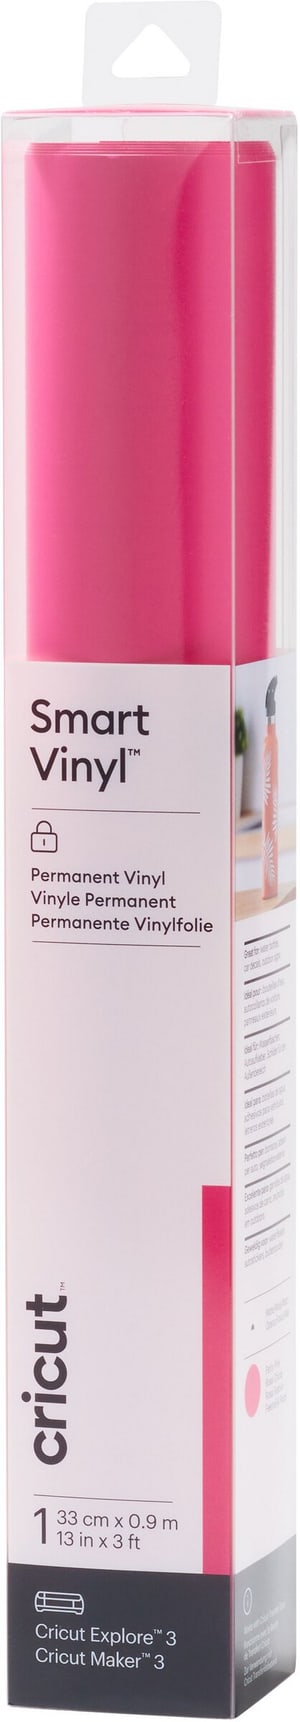 Vinylfolie Smart Matt Permanent 33 x 91 cm, Pink